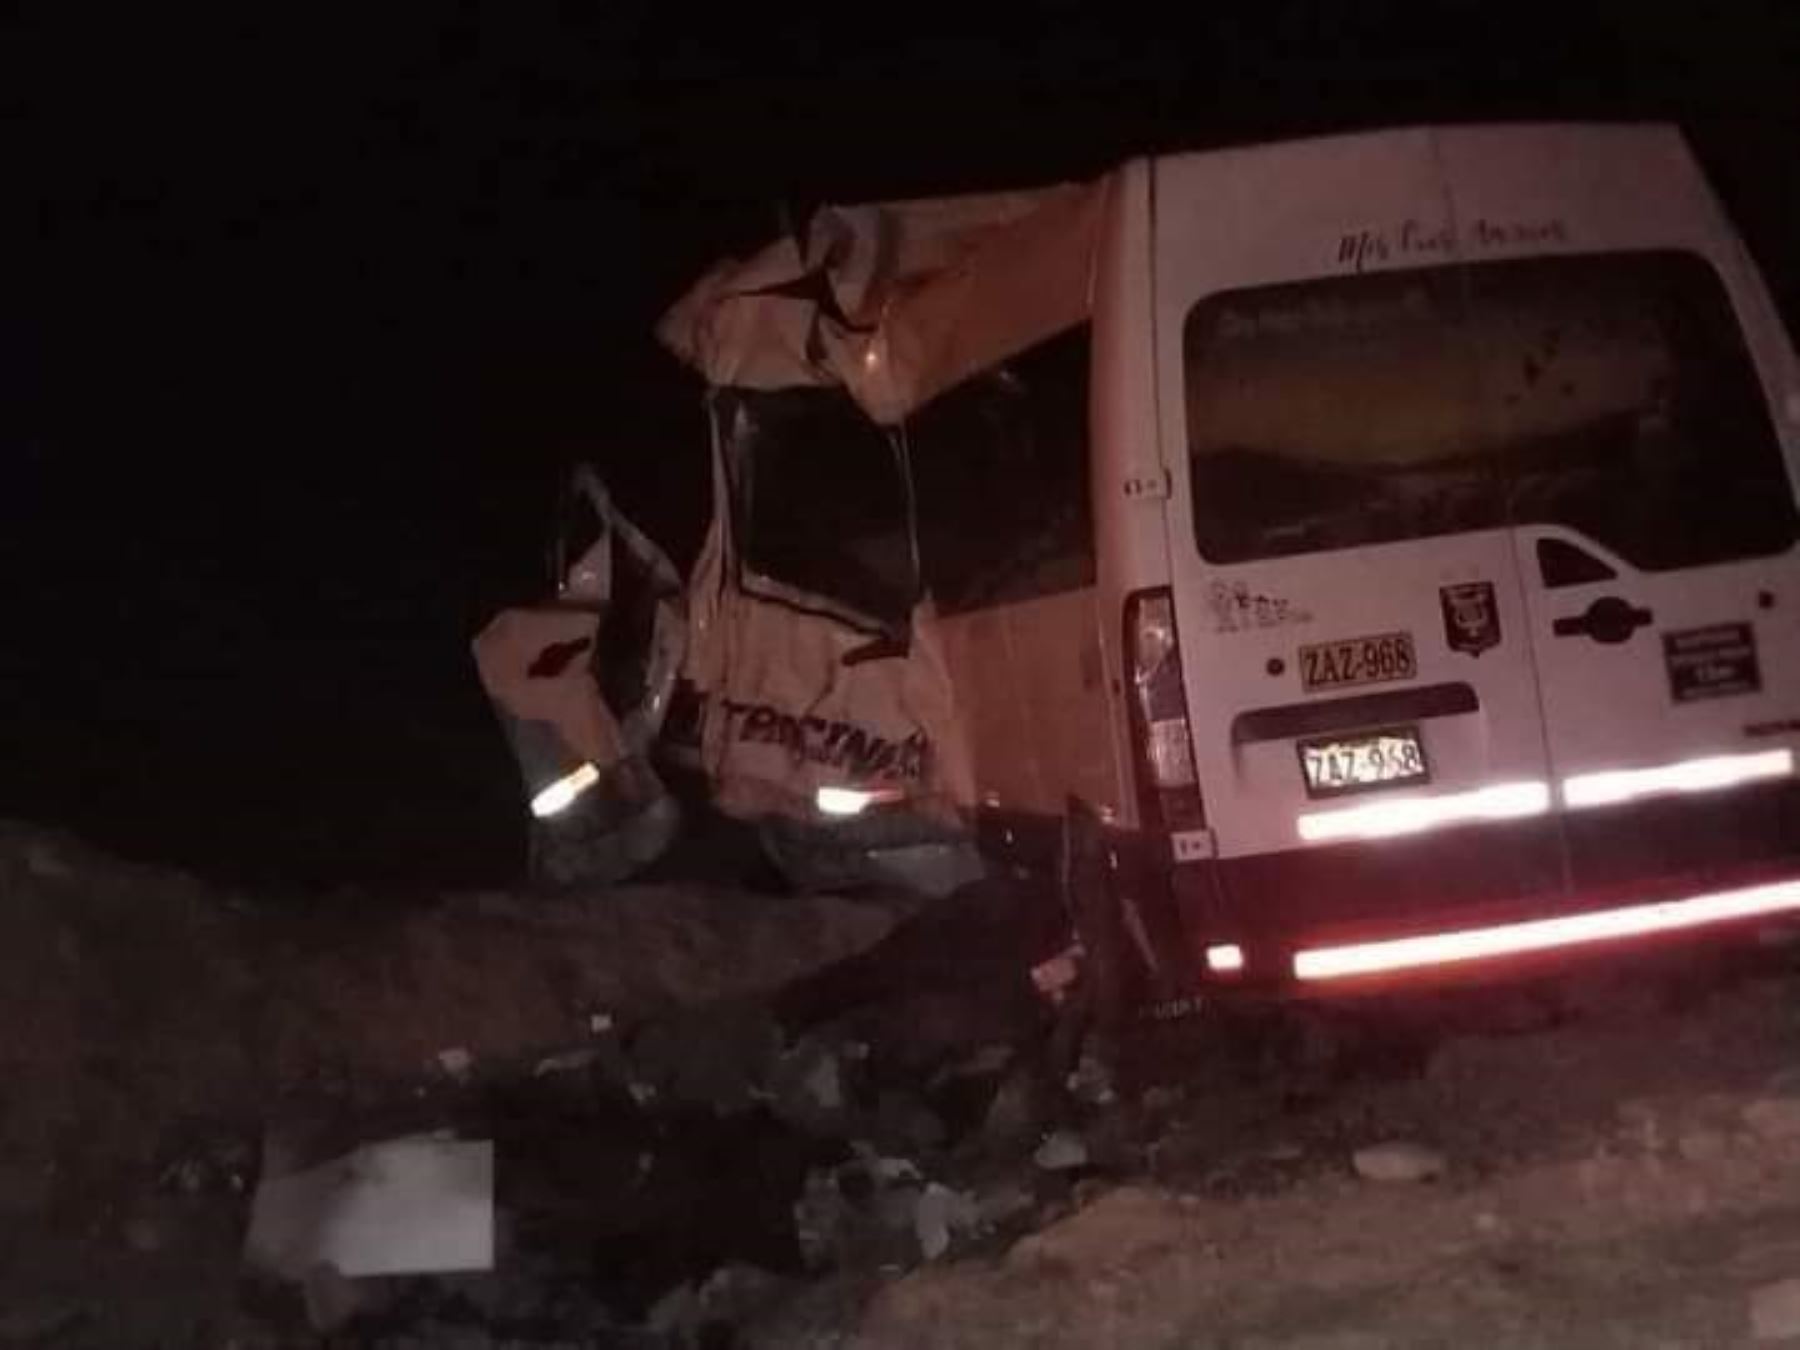 Al menos diez personas murieron luego que la miniván en la viajaban chocara frontalmente contra un volquete. El accidente se produjo en Arequipa. Foto cortesía: Radio San Martín